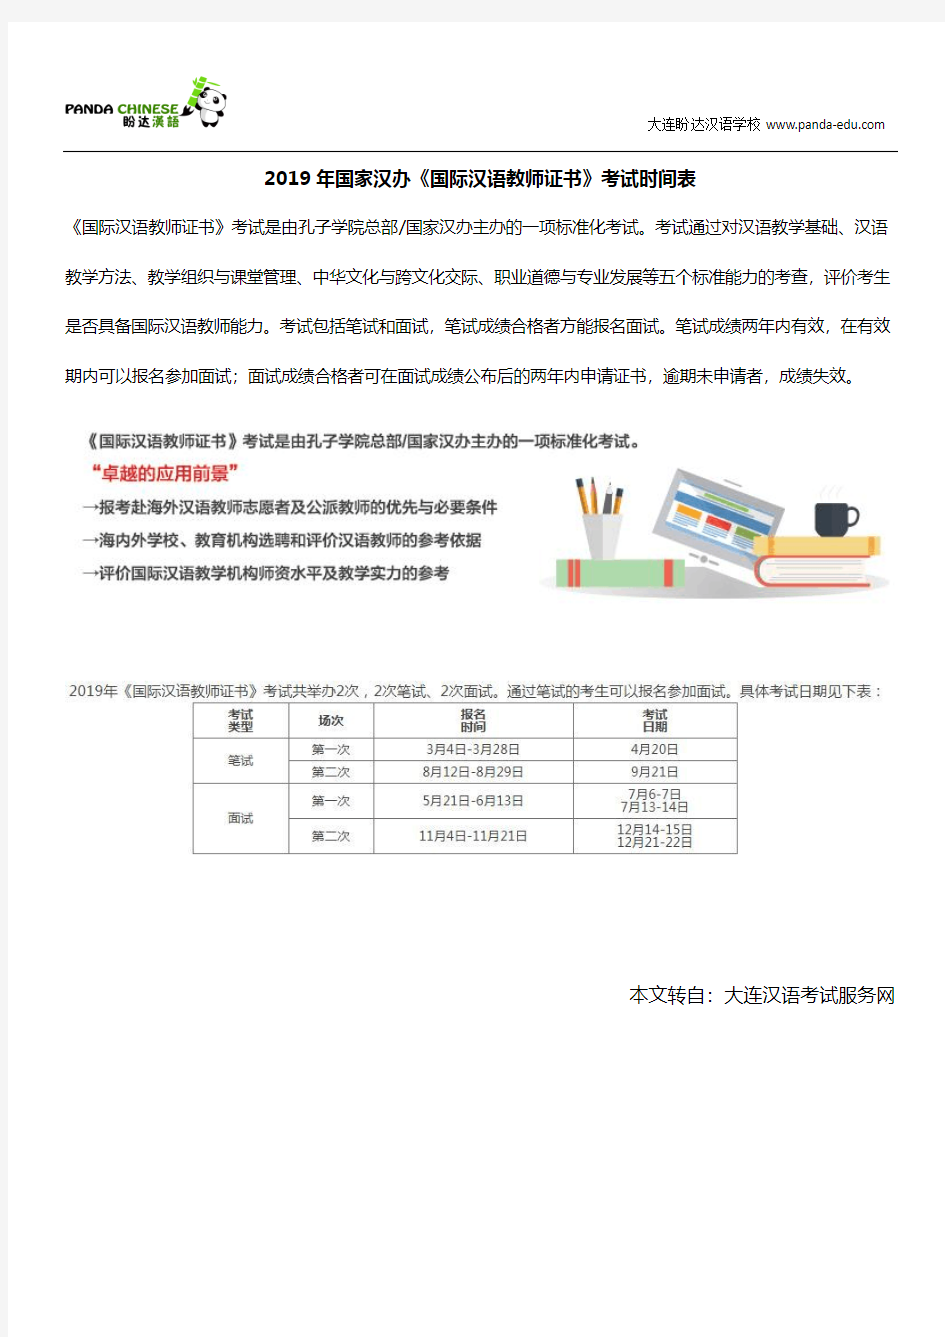 2019年国家汉办《国际汉语教师证书》考试时间表